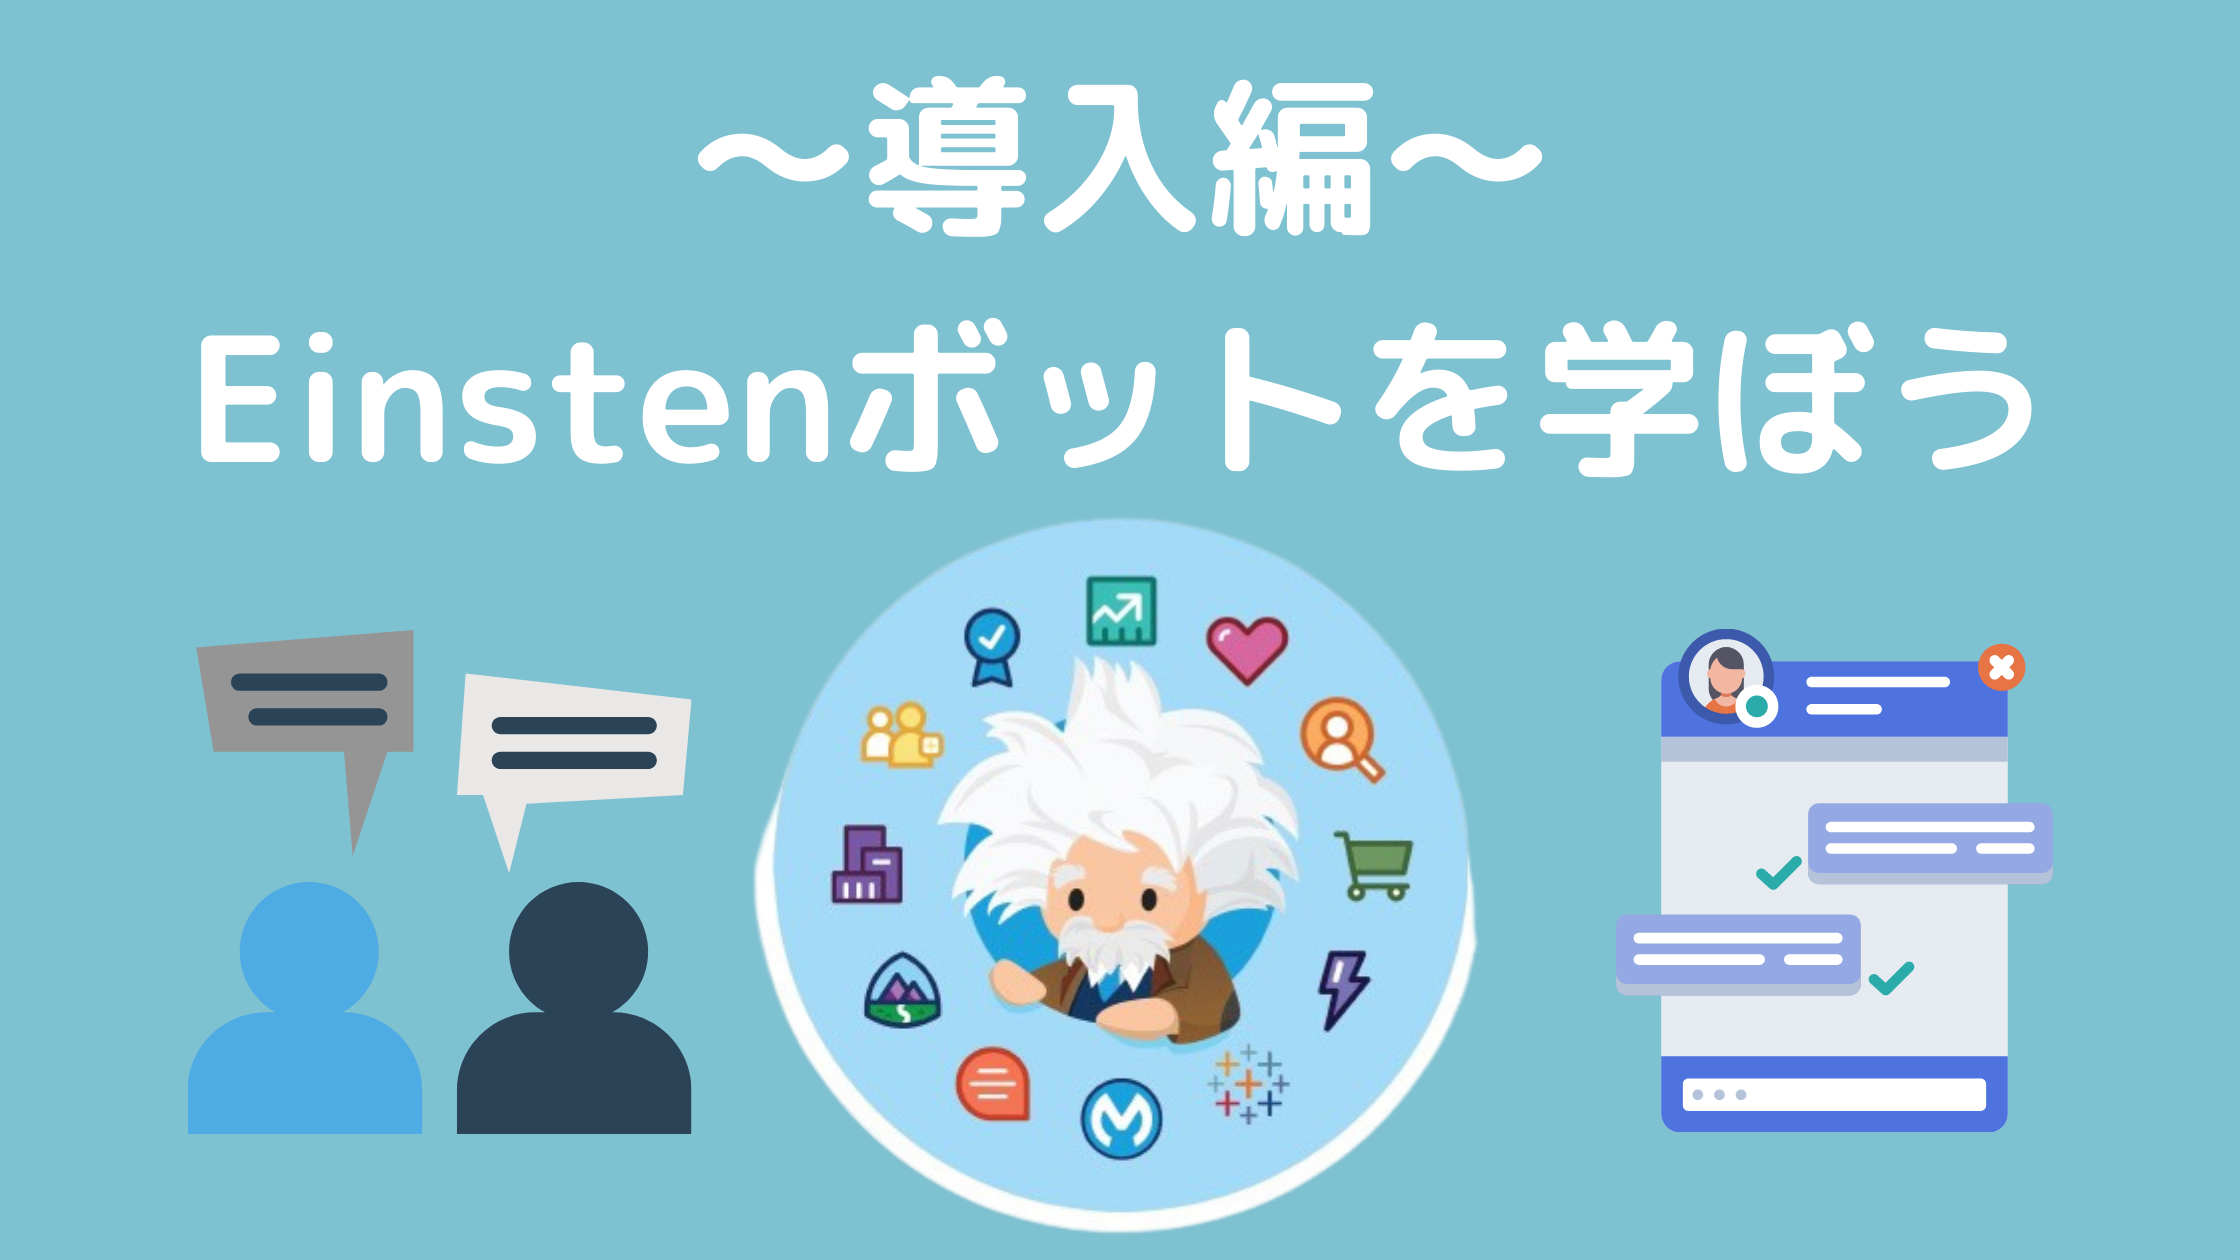 【導入編】Salesforceの機能「Einsteinボット」について学ぶ